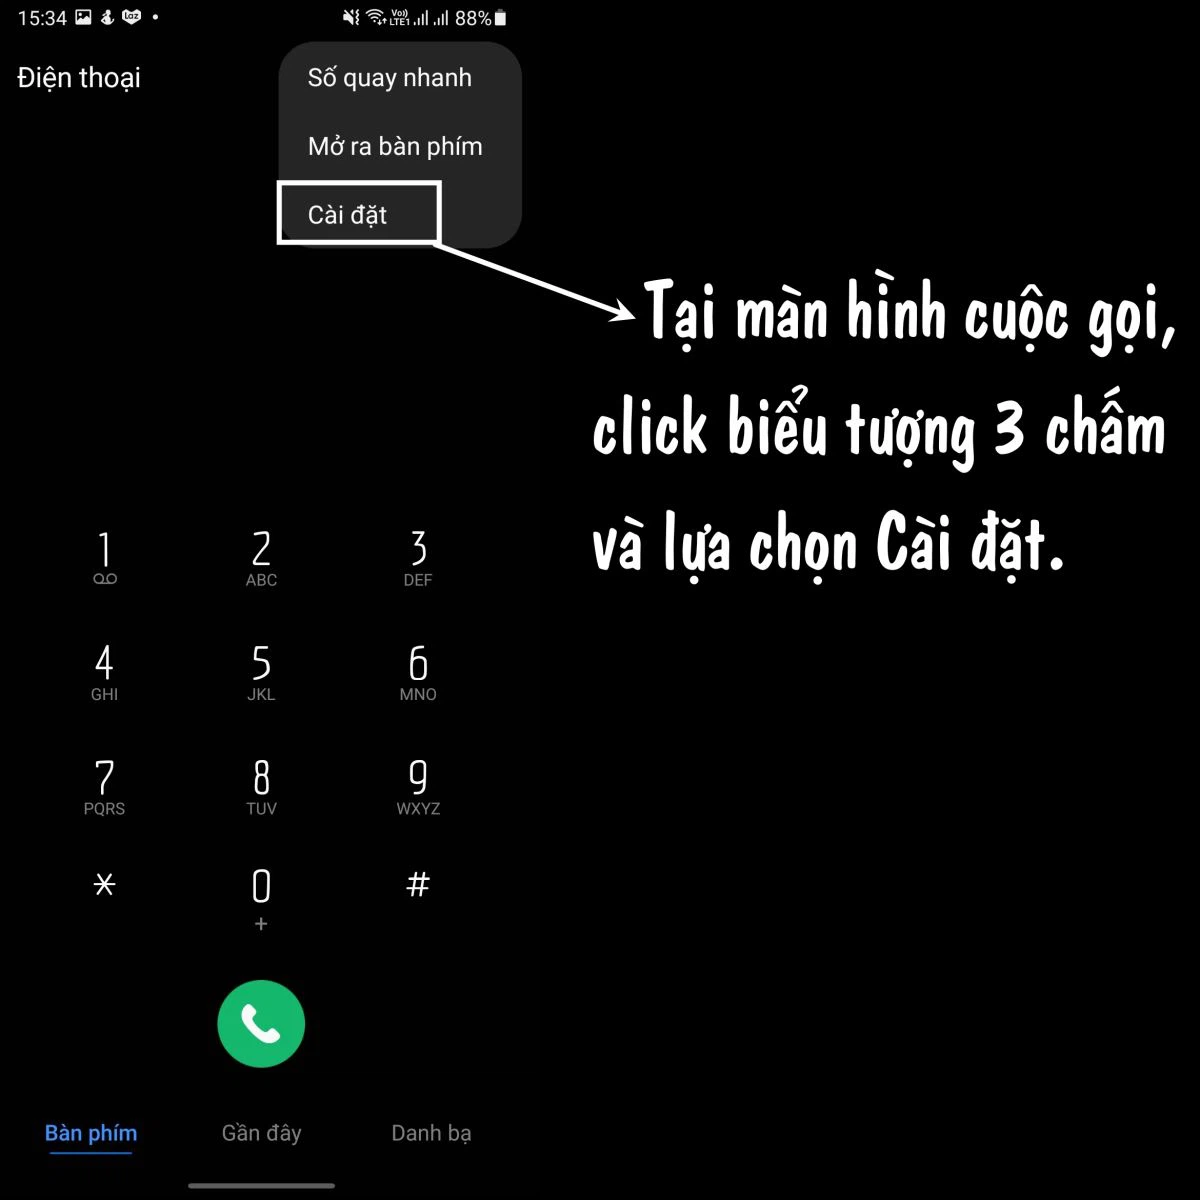 Cách chặn số lạ gọi đến ngoài danh bạ trên iPhone không cần block (Và trong  danh bạ) - TekZone.vn